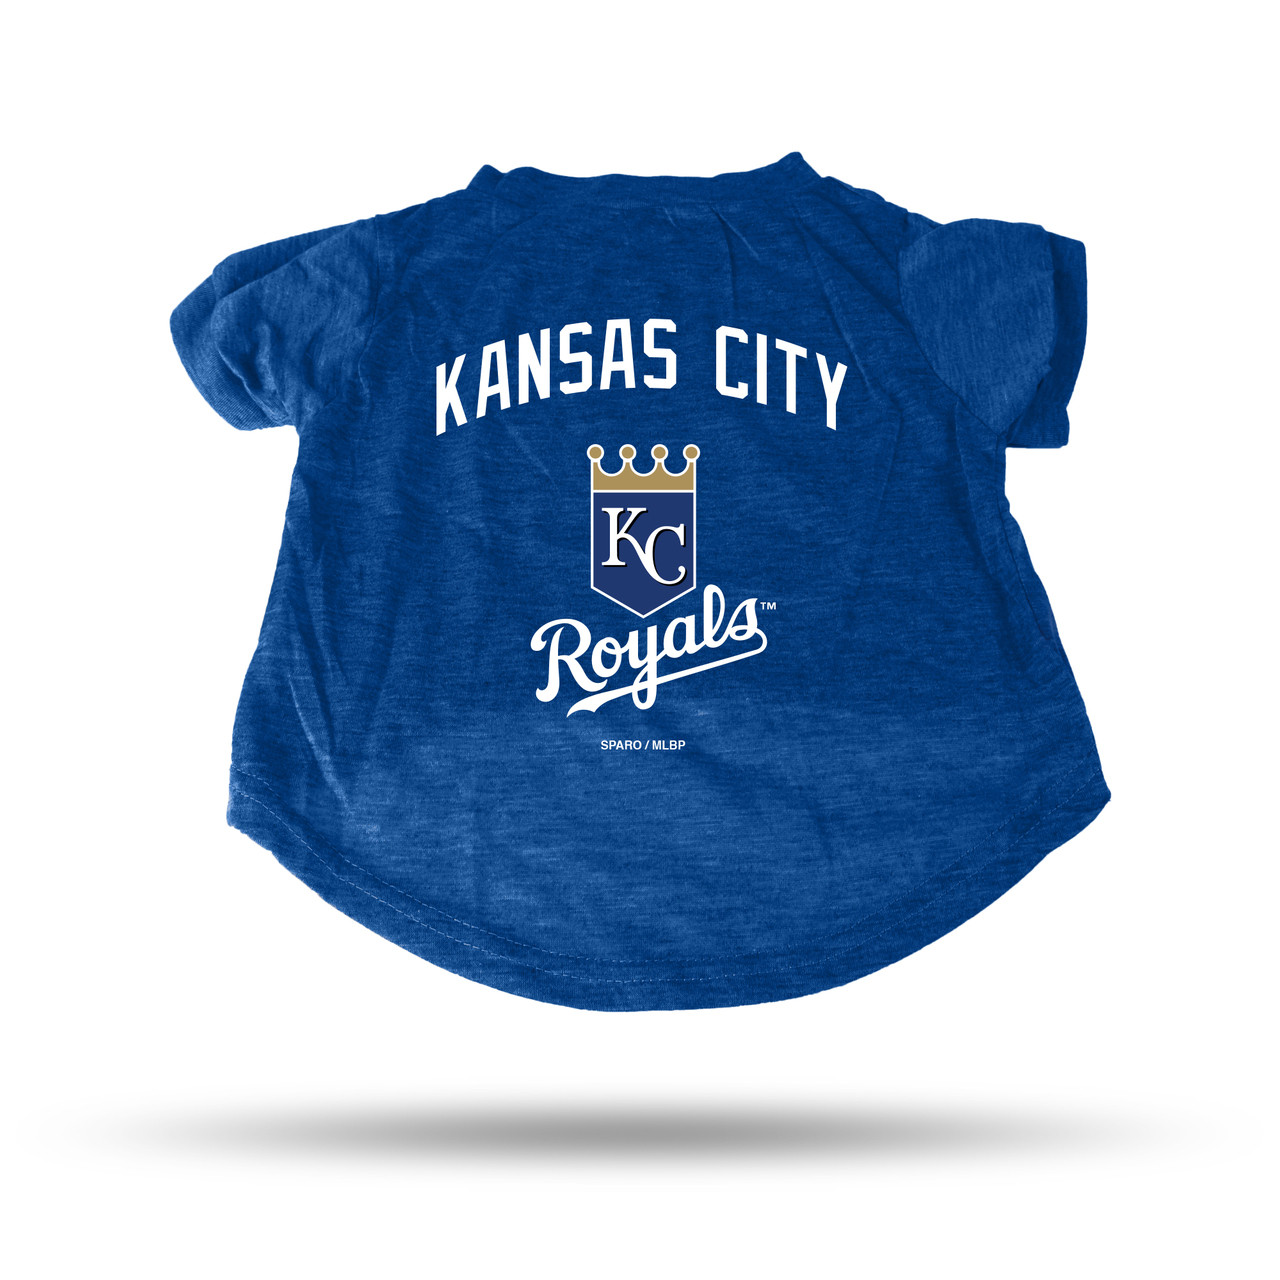 Kansas City Royals Pet Tee Shirt Size XL - Caseys Distributing